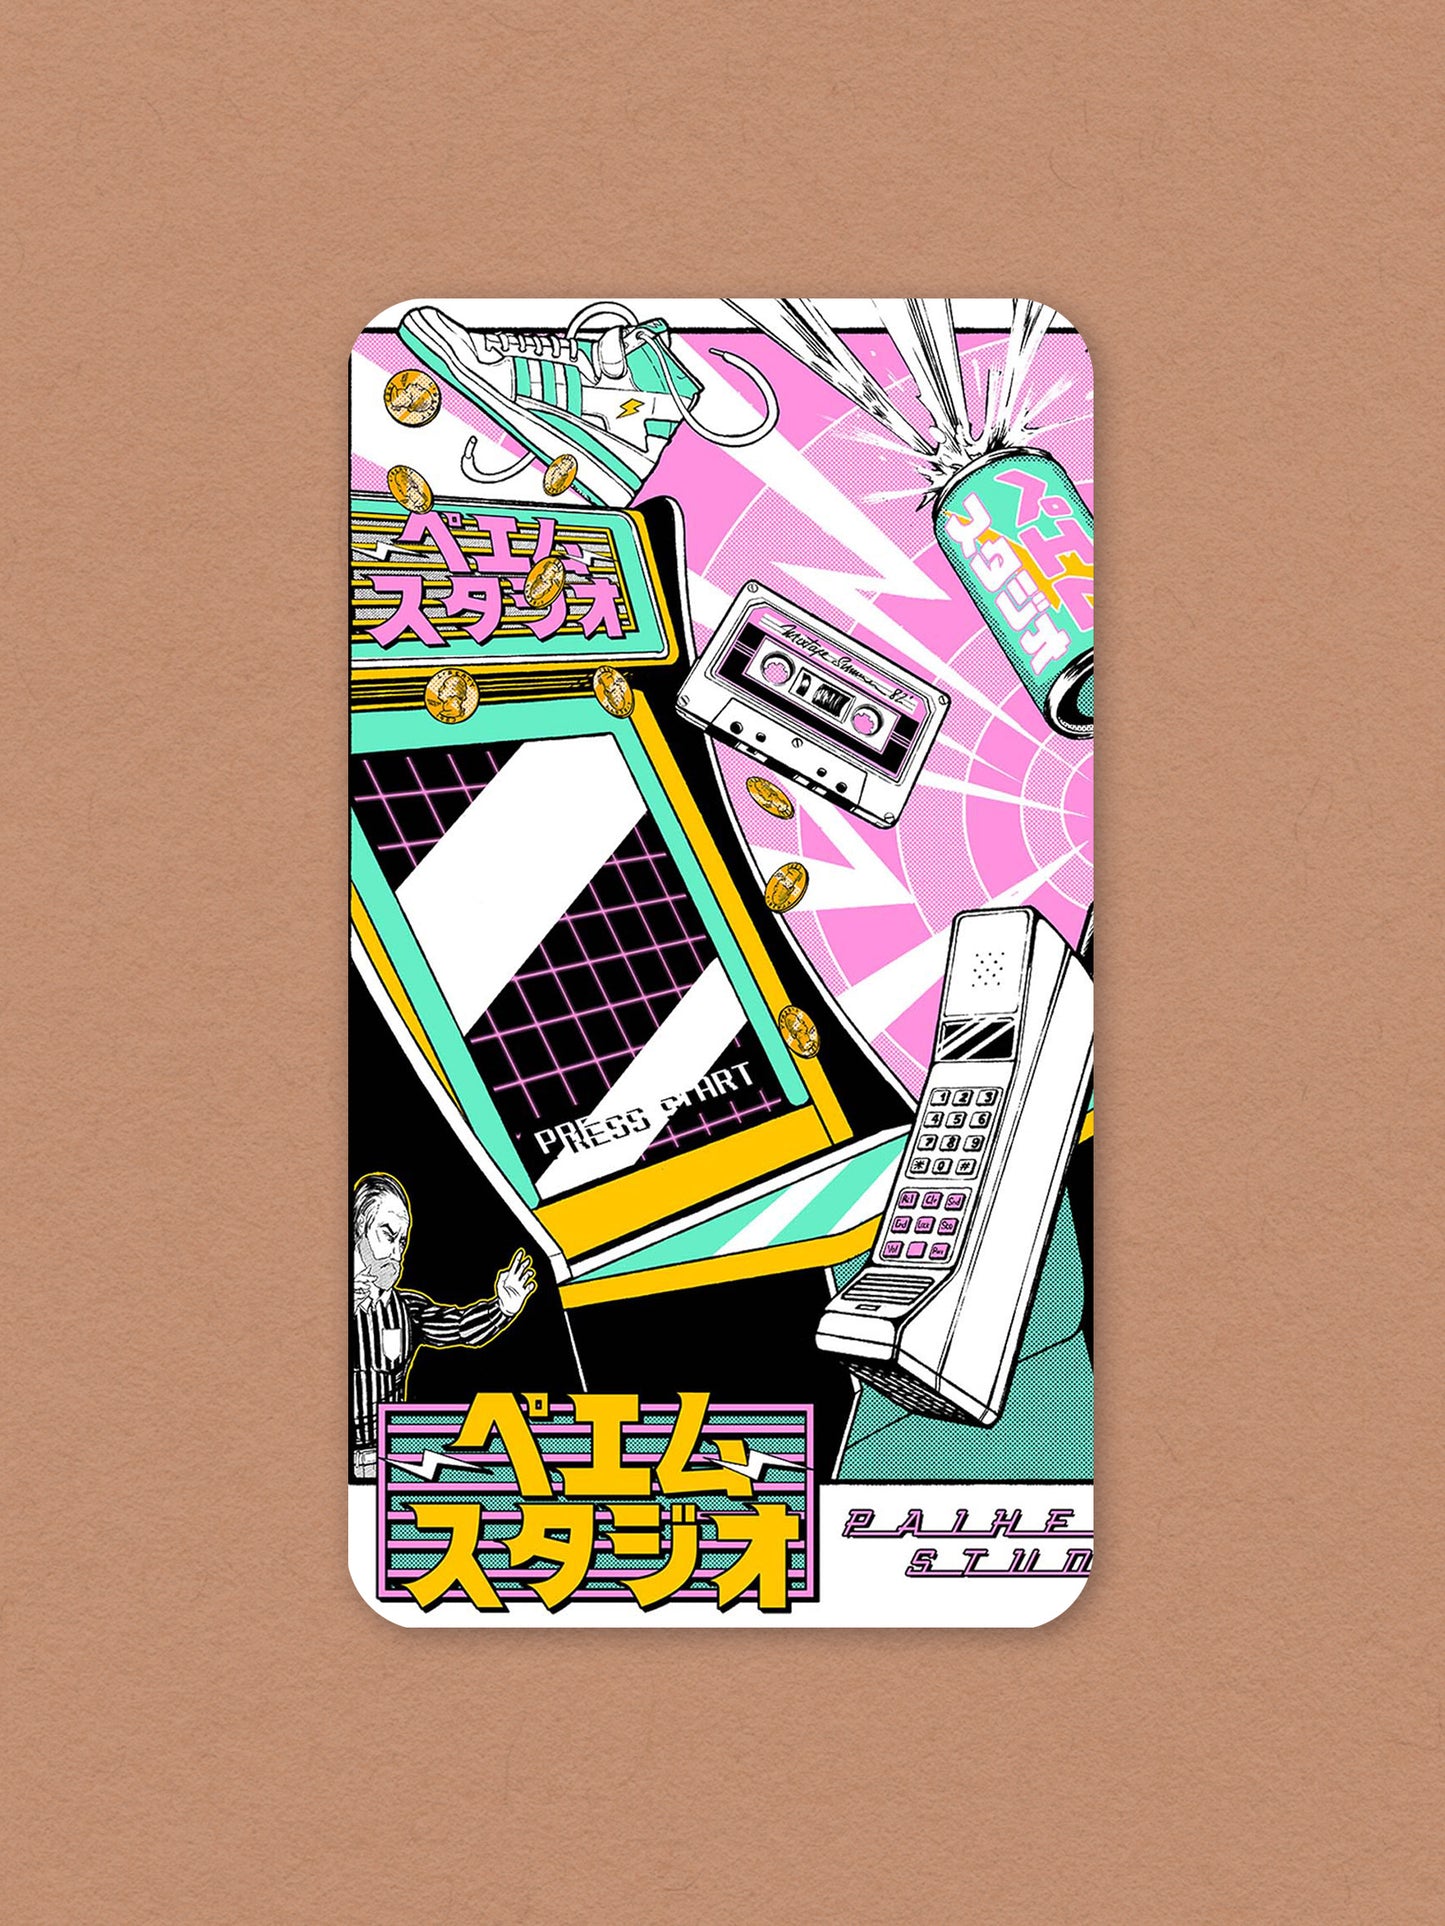 Phone wallpaper - Arcade Machine